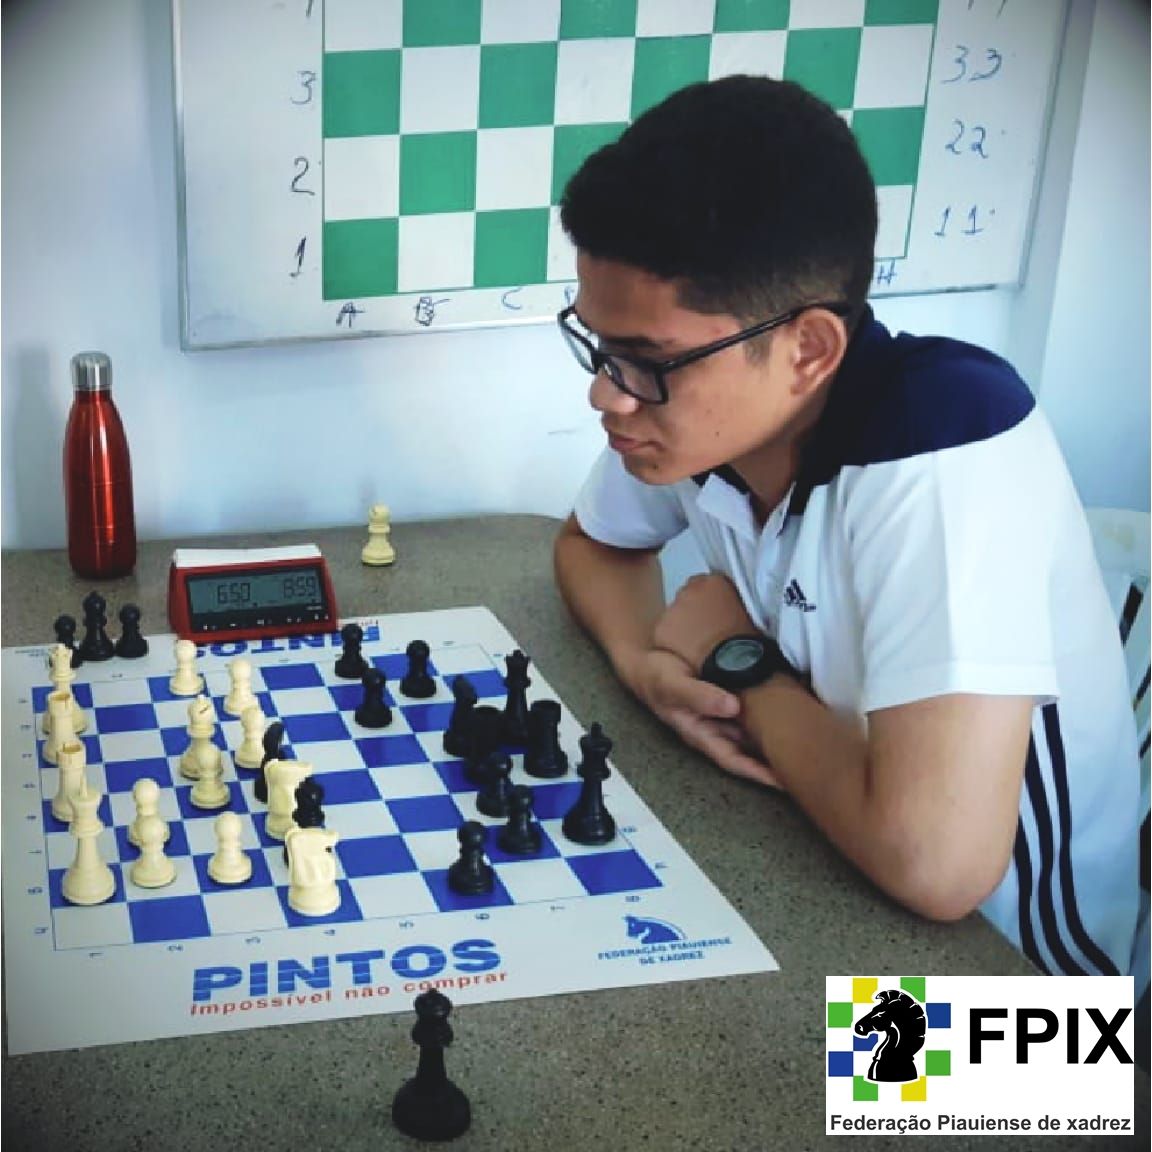 FPIX - Federação Piauiense de Xadrez